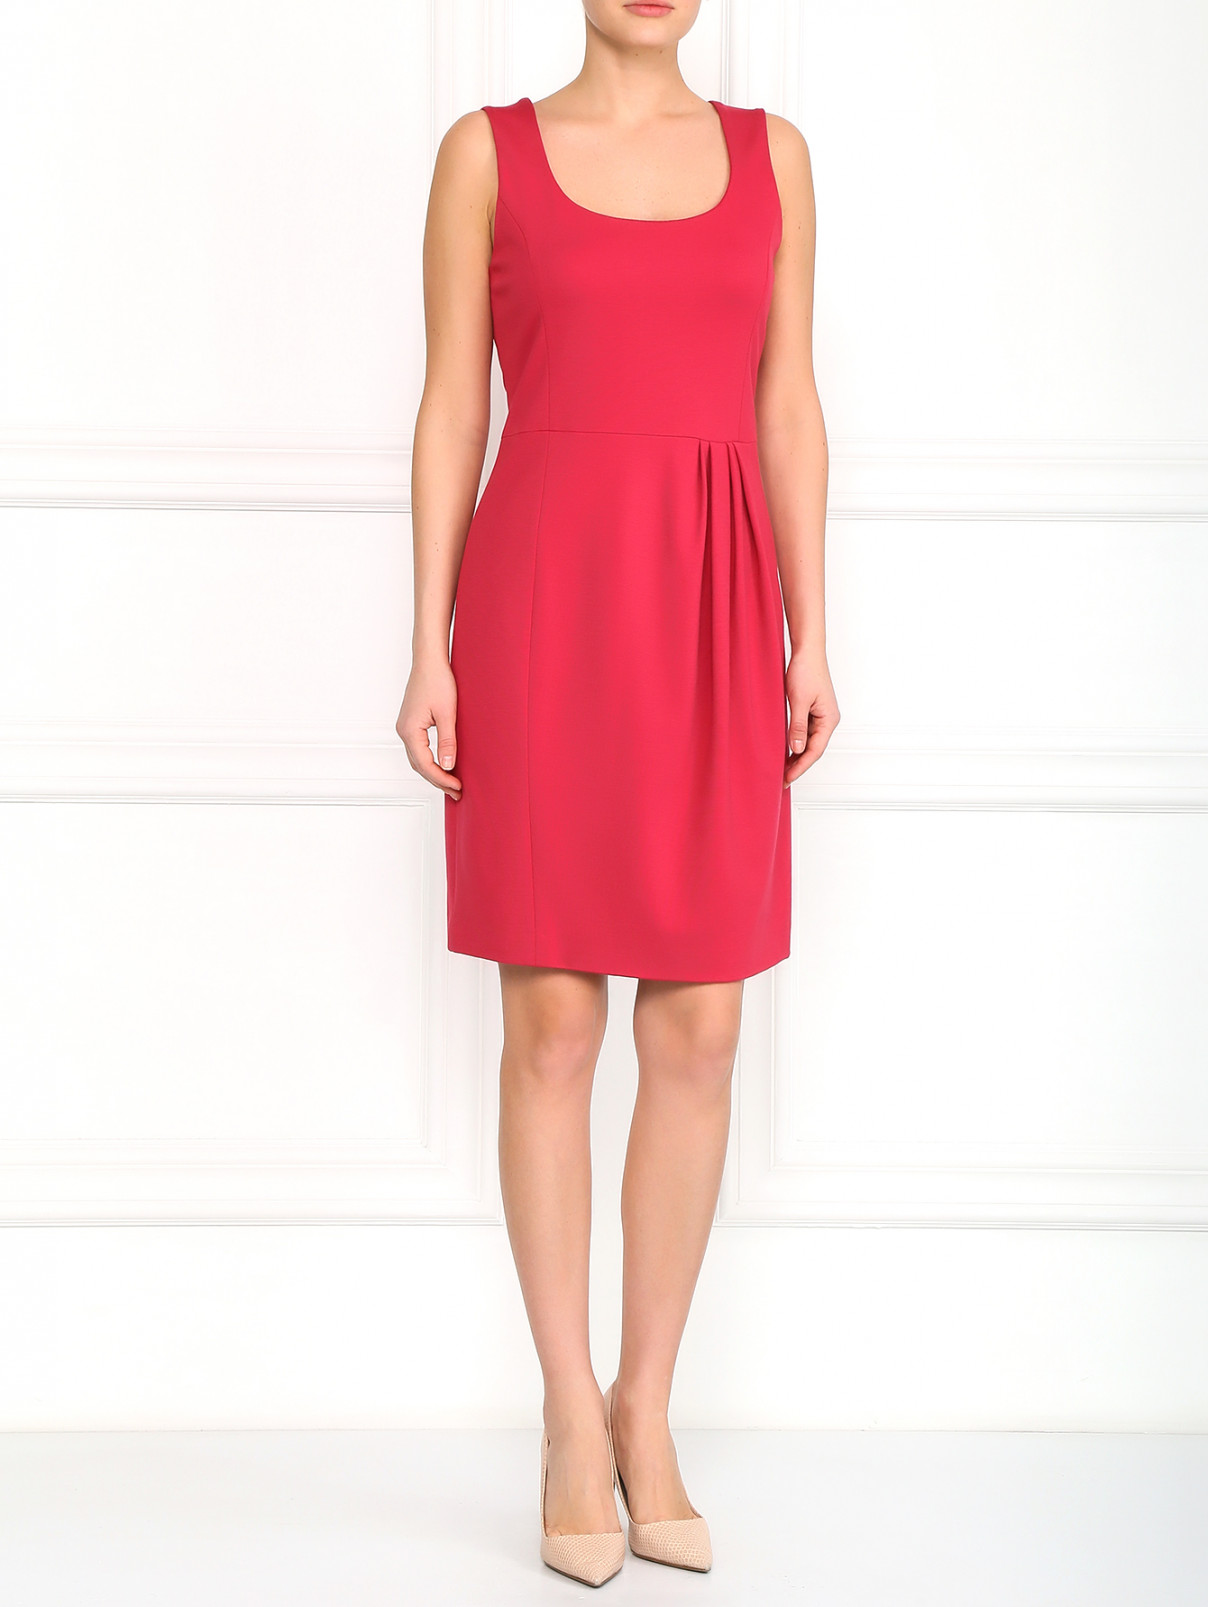 Трикотажное платье с драпировкой Moschino Cheap&Chic  –  Модель Общий вид  – Цвет:  Красный